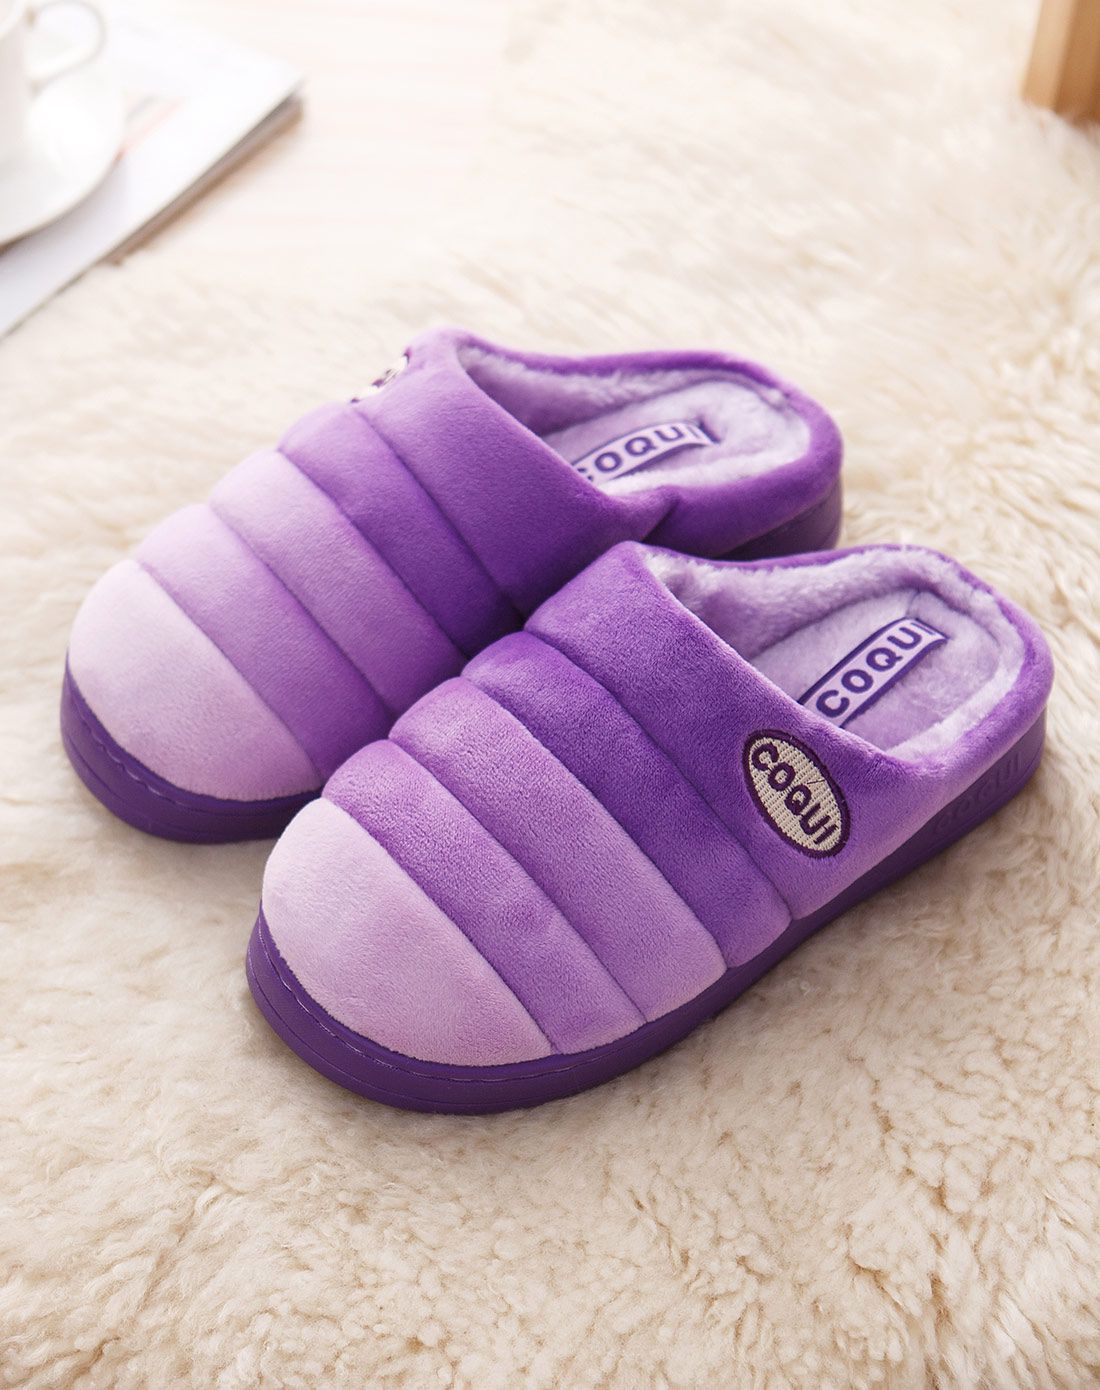 生活—水木娃娃家居用品专场酷趣女款彩条防滑居家棉拖鞋(紫色